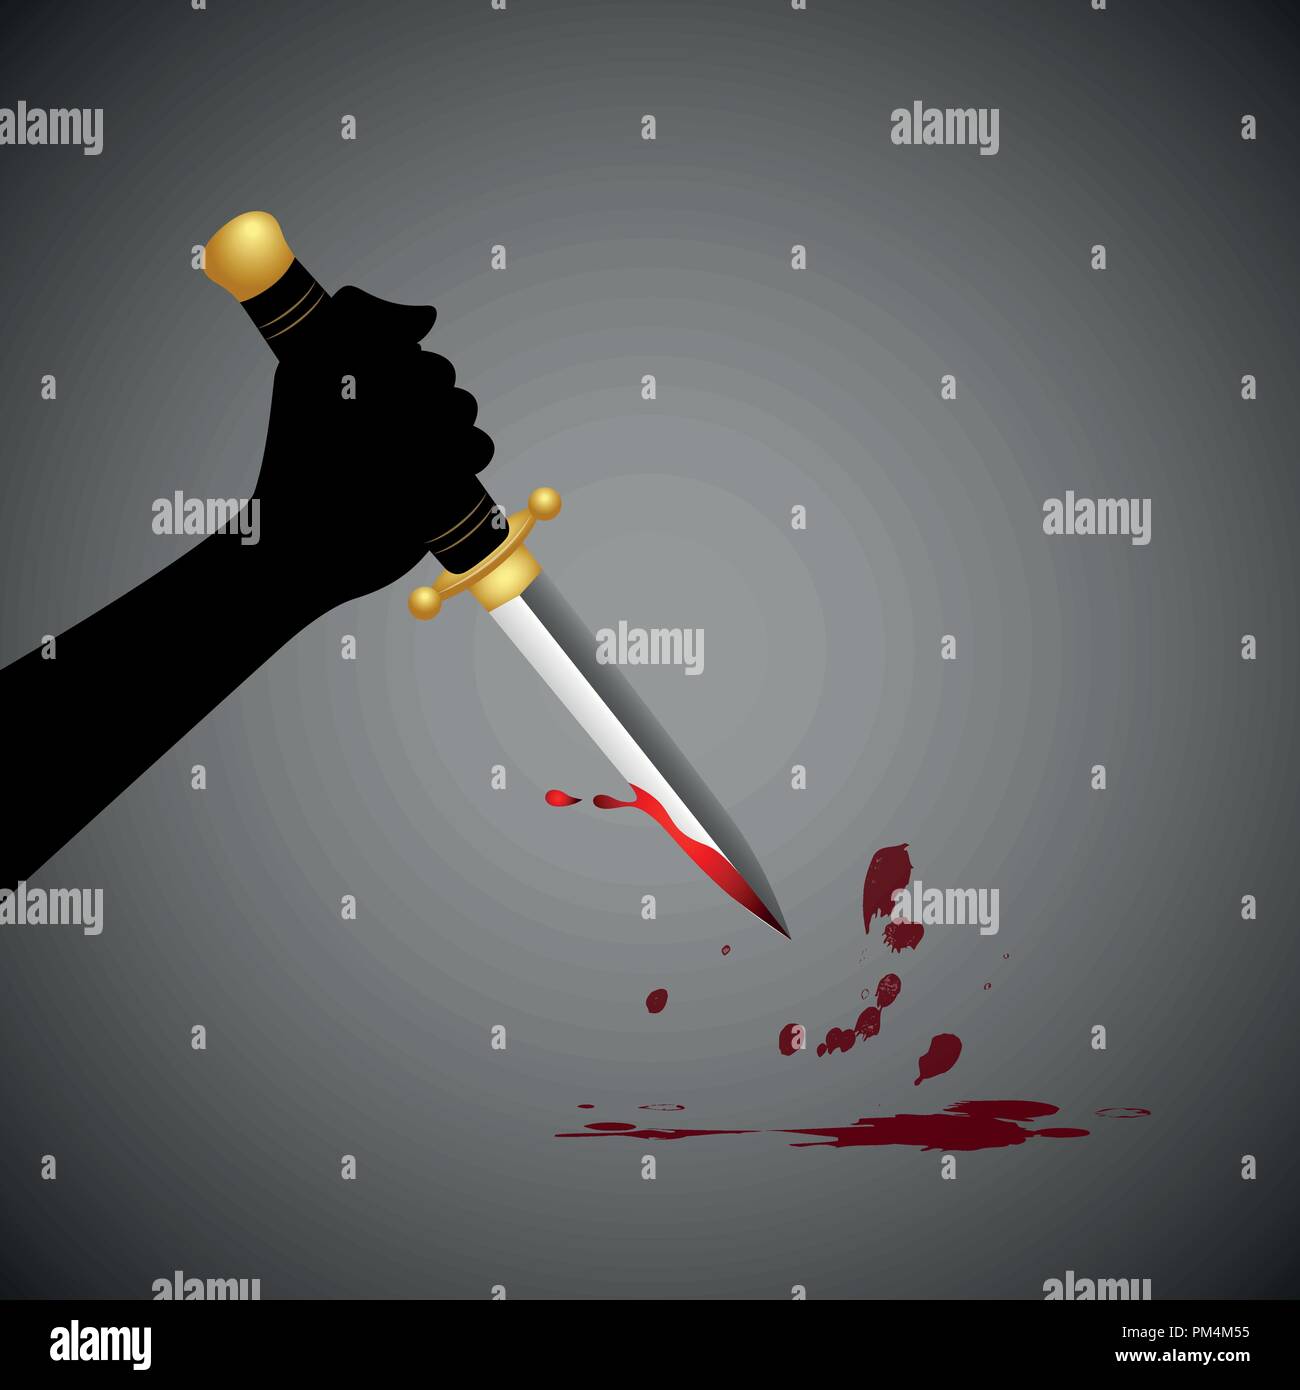 hand hold sharp boody dagger knife vector illustration EPS10 Stock Vector